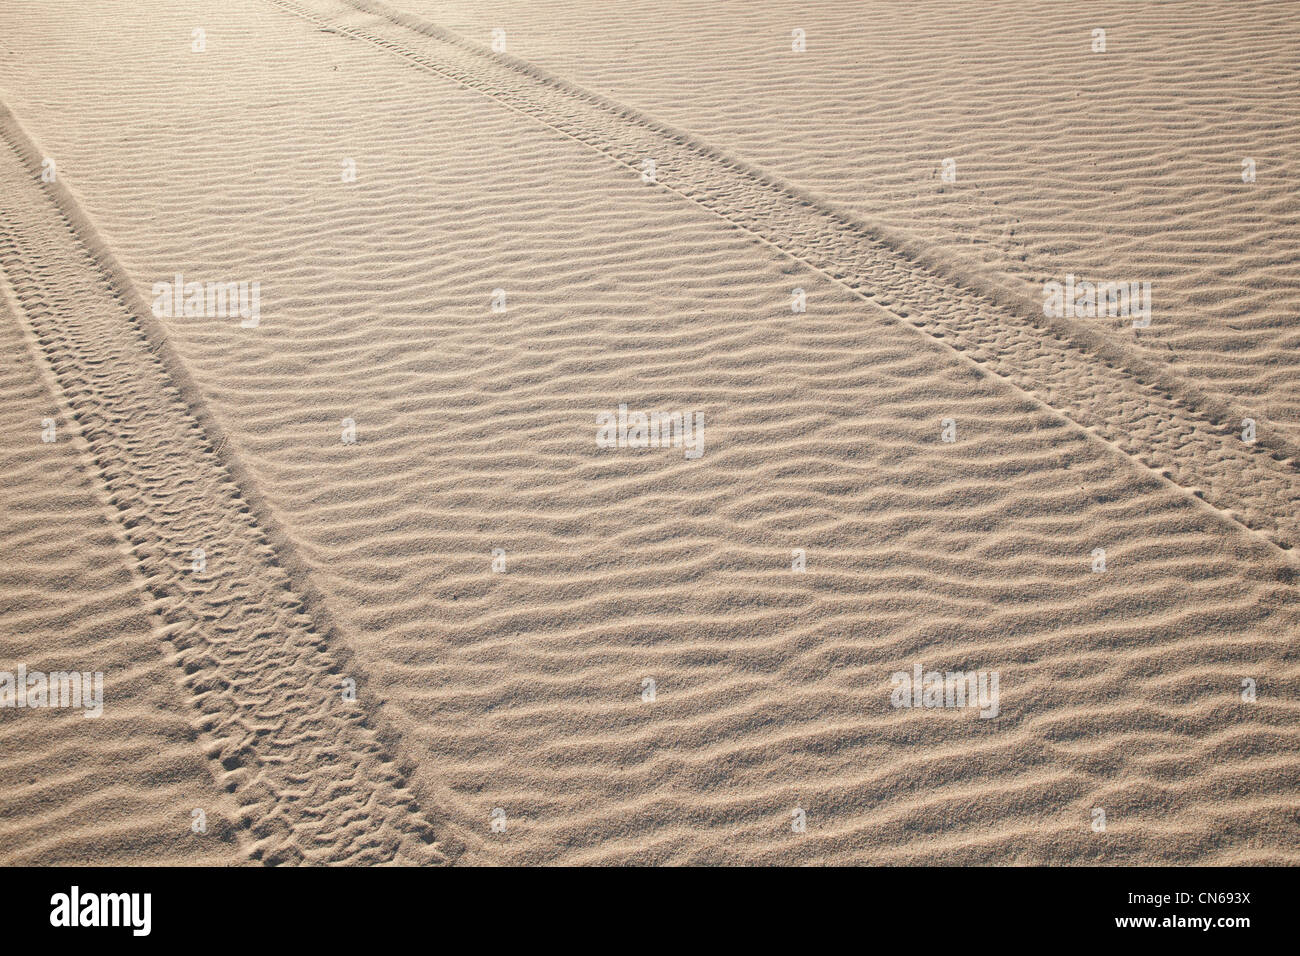 Marcas de neumáticos a lo largo de la arena de la península Eyre, Australia del Sur Foto de stock